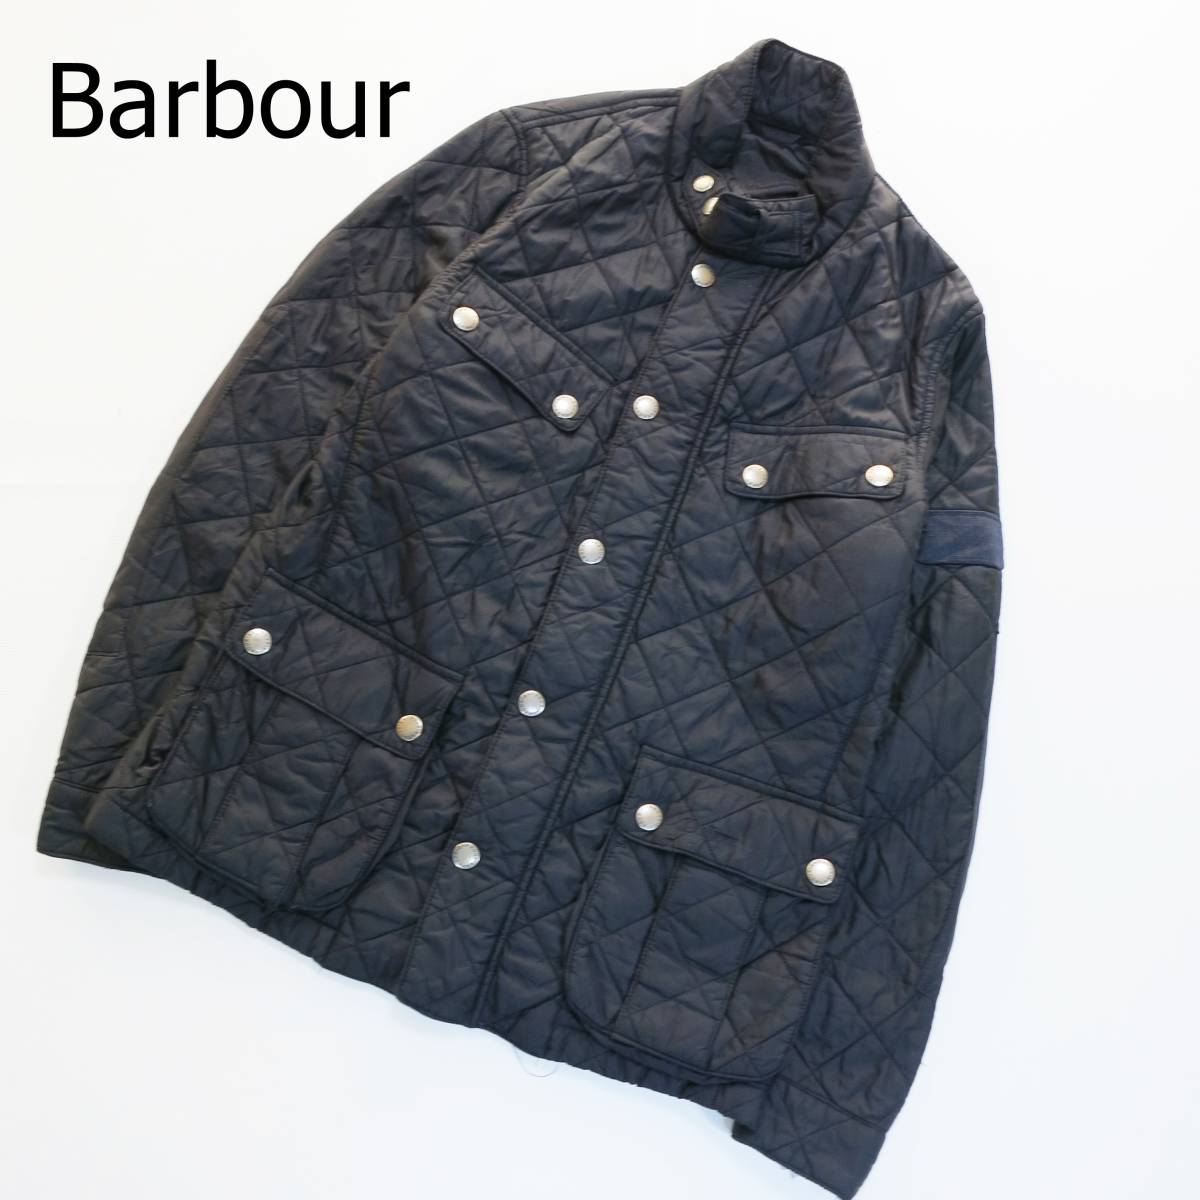 Barbour バブアー キルティングジャケット ブラック 黒 サイズS 軽量 中綿 4か所ポケット ワークブルゾン あったか シンプル ワッペンロゴ